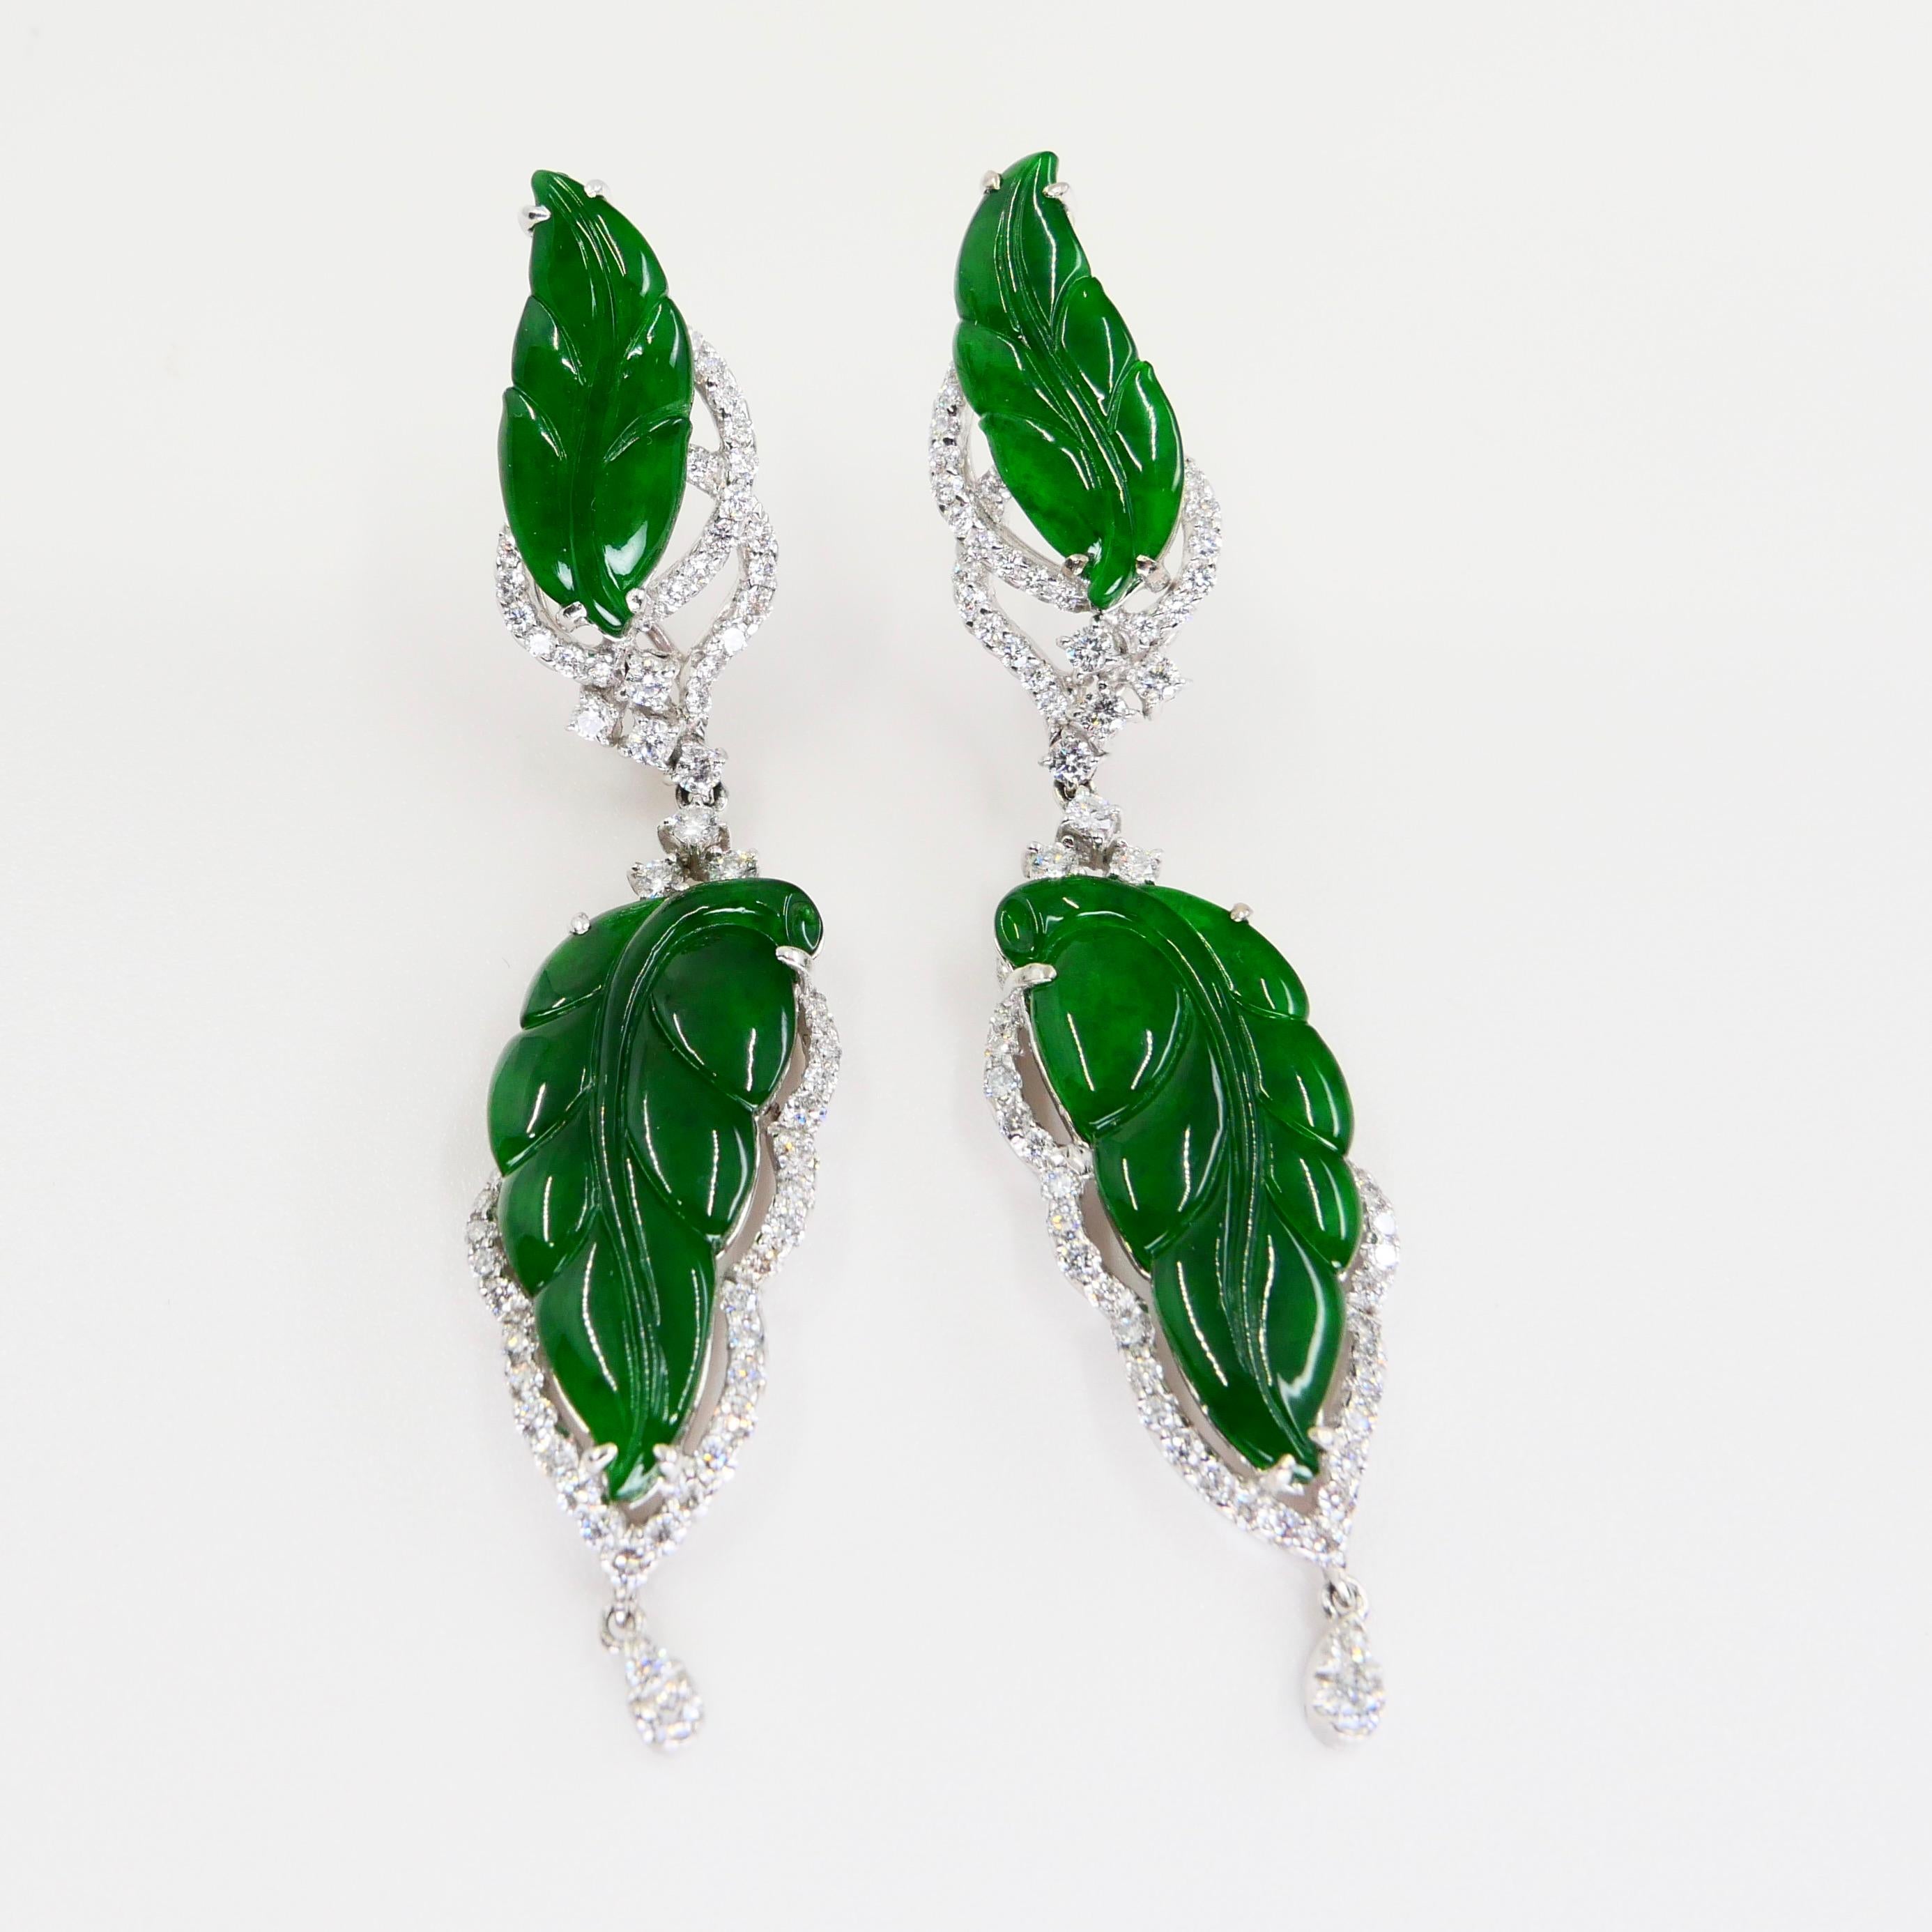 Vintage Certified Jadeite Jade and Diamond Drop Earrings, Intense Imperial Green 8